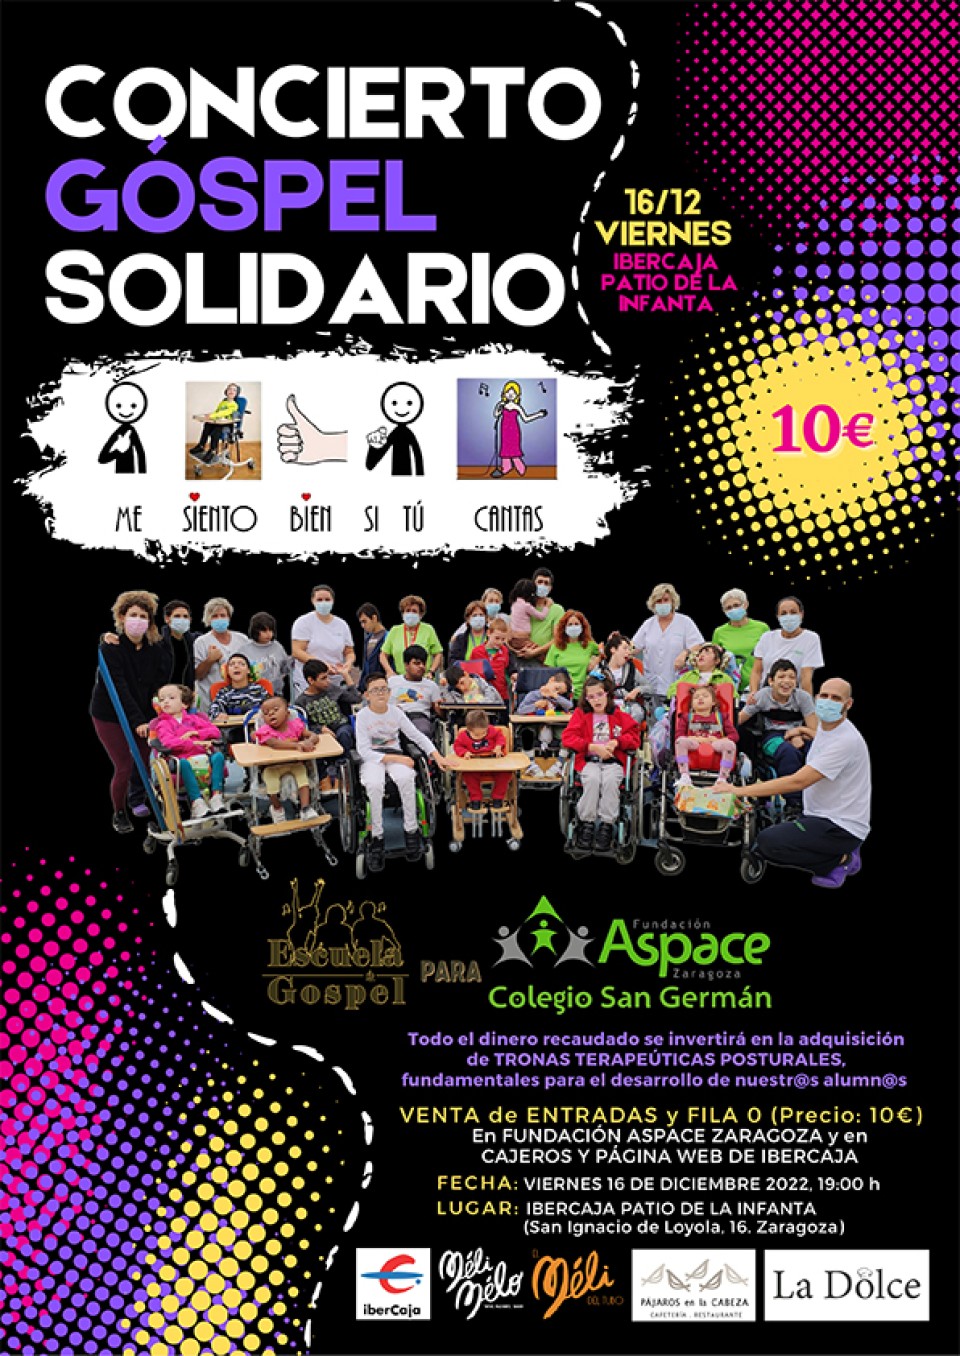 Imagen concierto-gospel-solidario-aspace-zaragoza-cartel.jpg